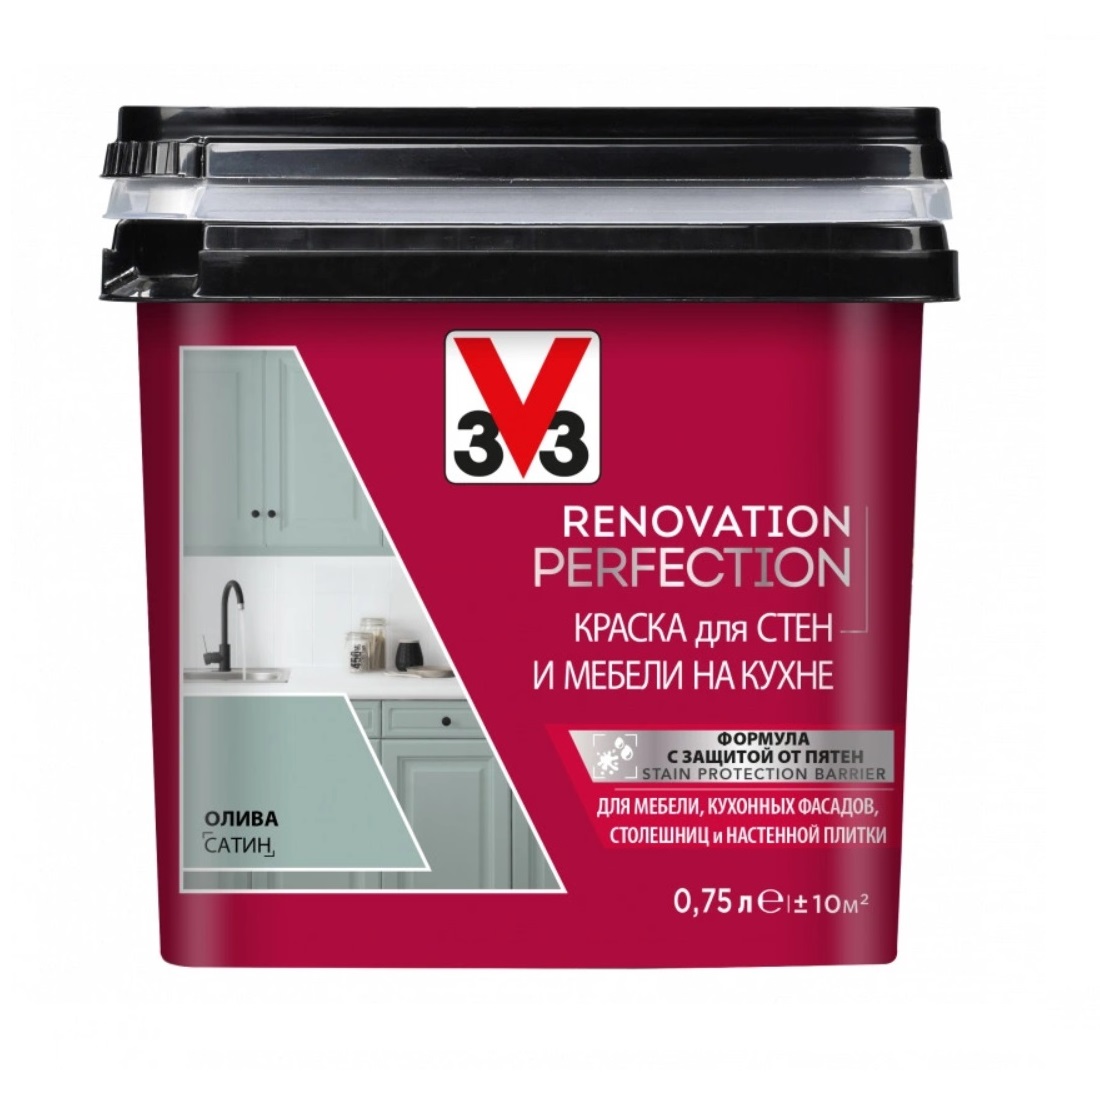 фото Краска для стен и мебели на кухне v33 renovation perfection-олива-0,75 л